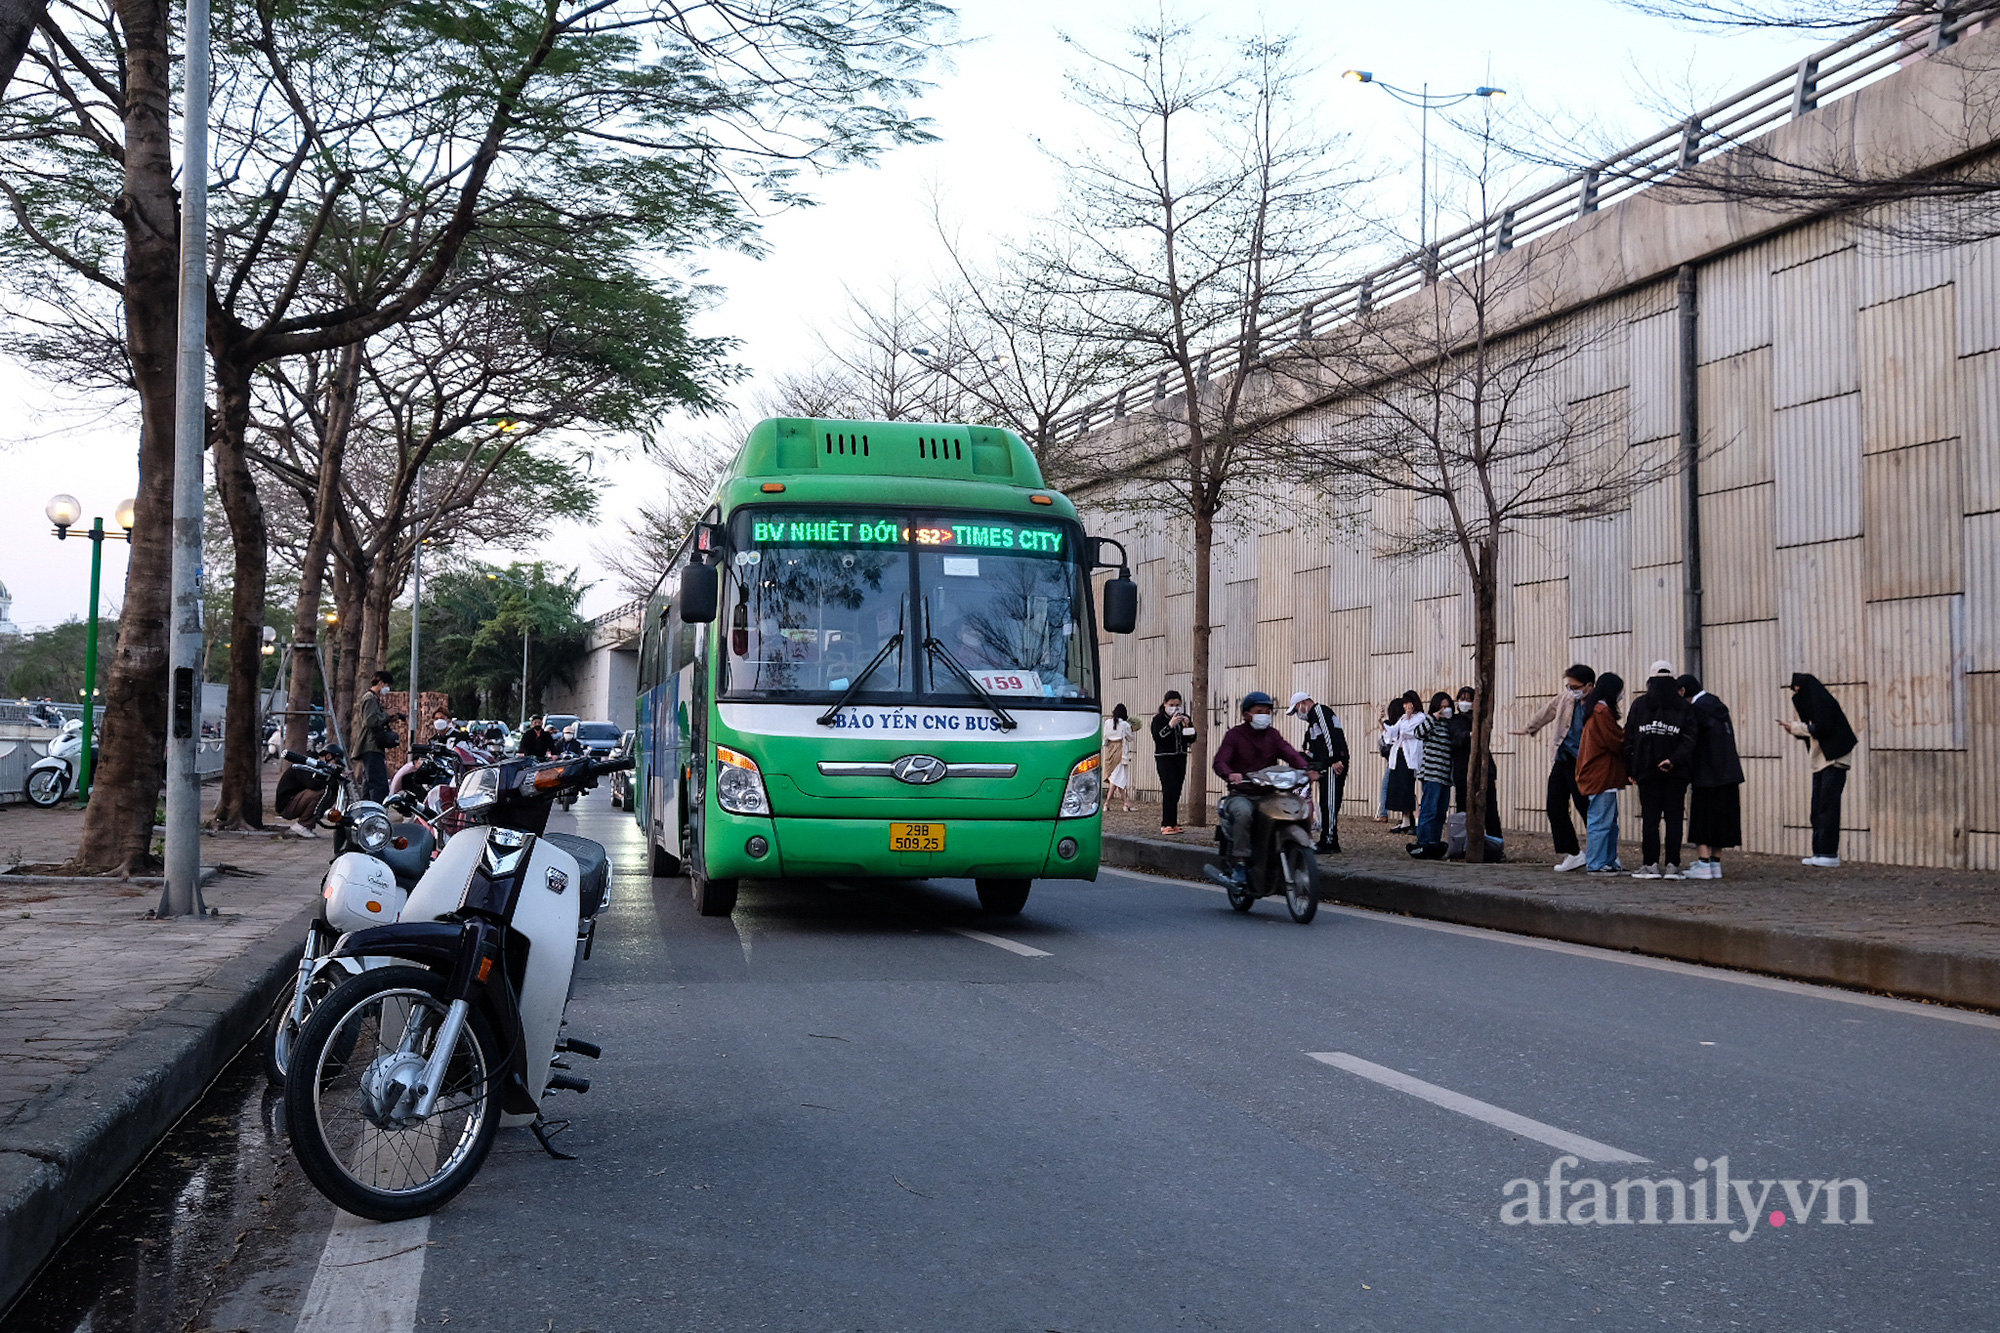 Giới trẻ đổ xô check-in hàng cây bàng hot nhất Hà Nội, gây mất an toàn giao thông - Ảnh 8.